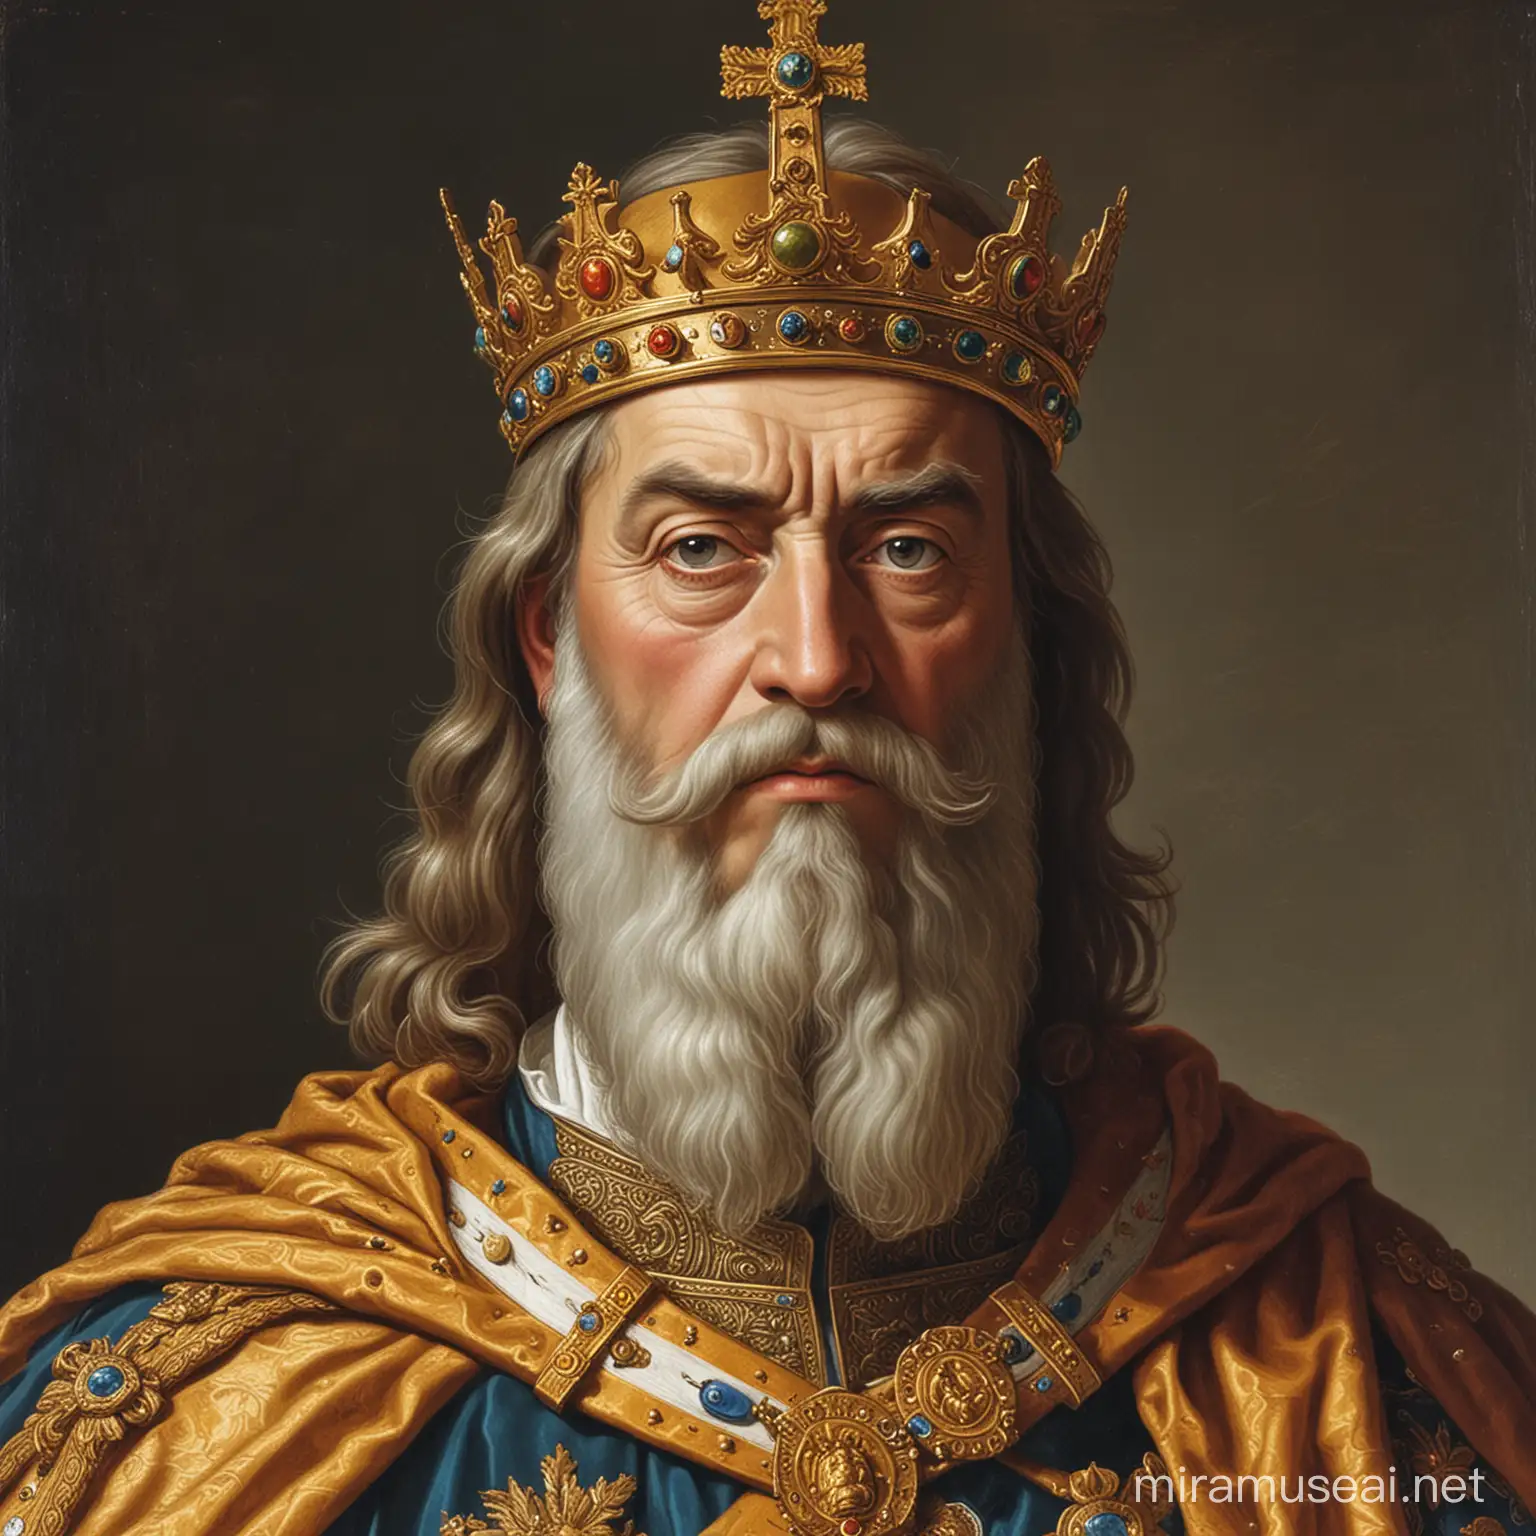 Emperor Charlemagne Portrait Noble Ruler in Regal Attire